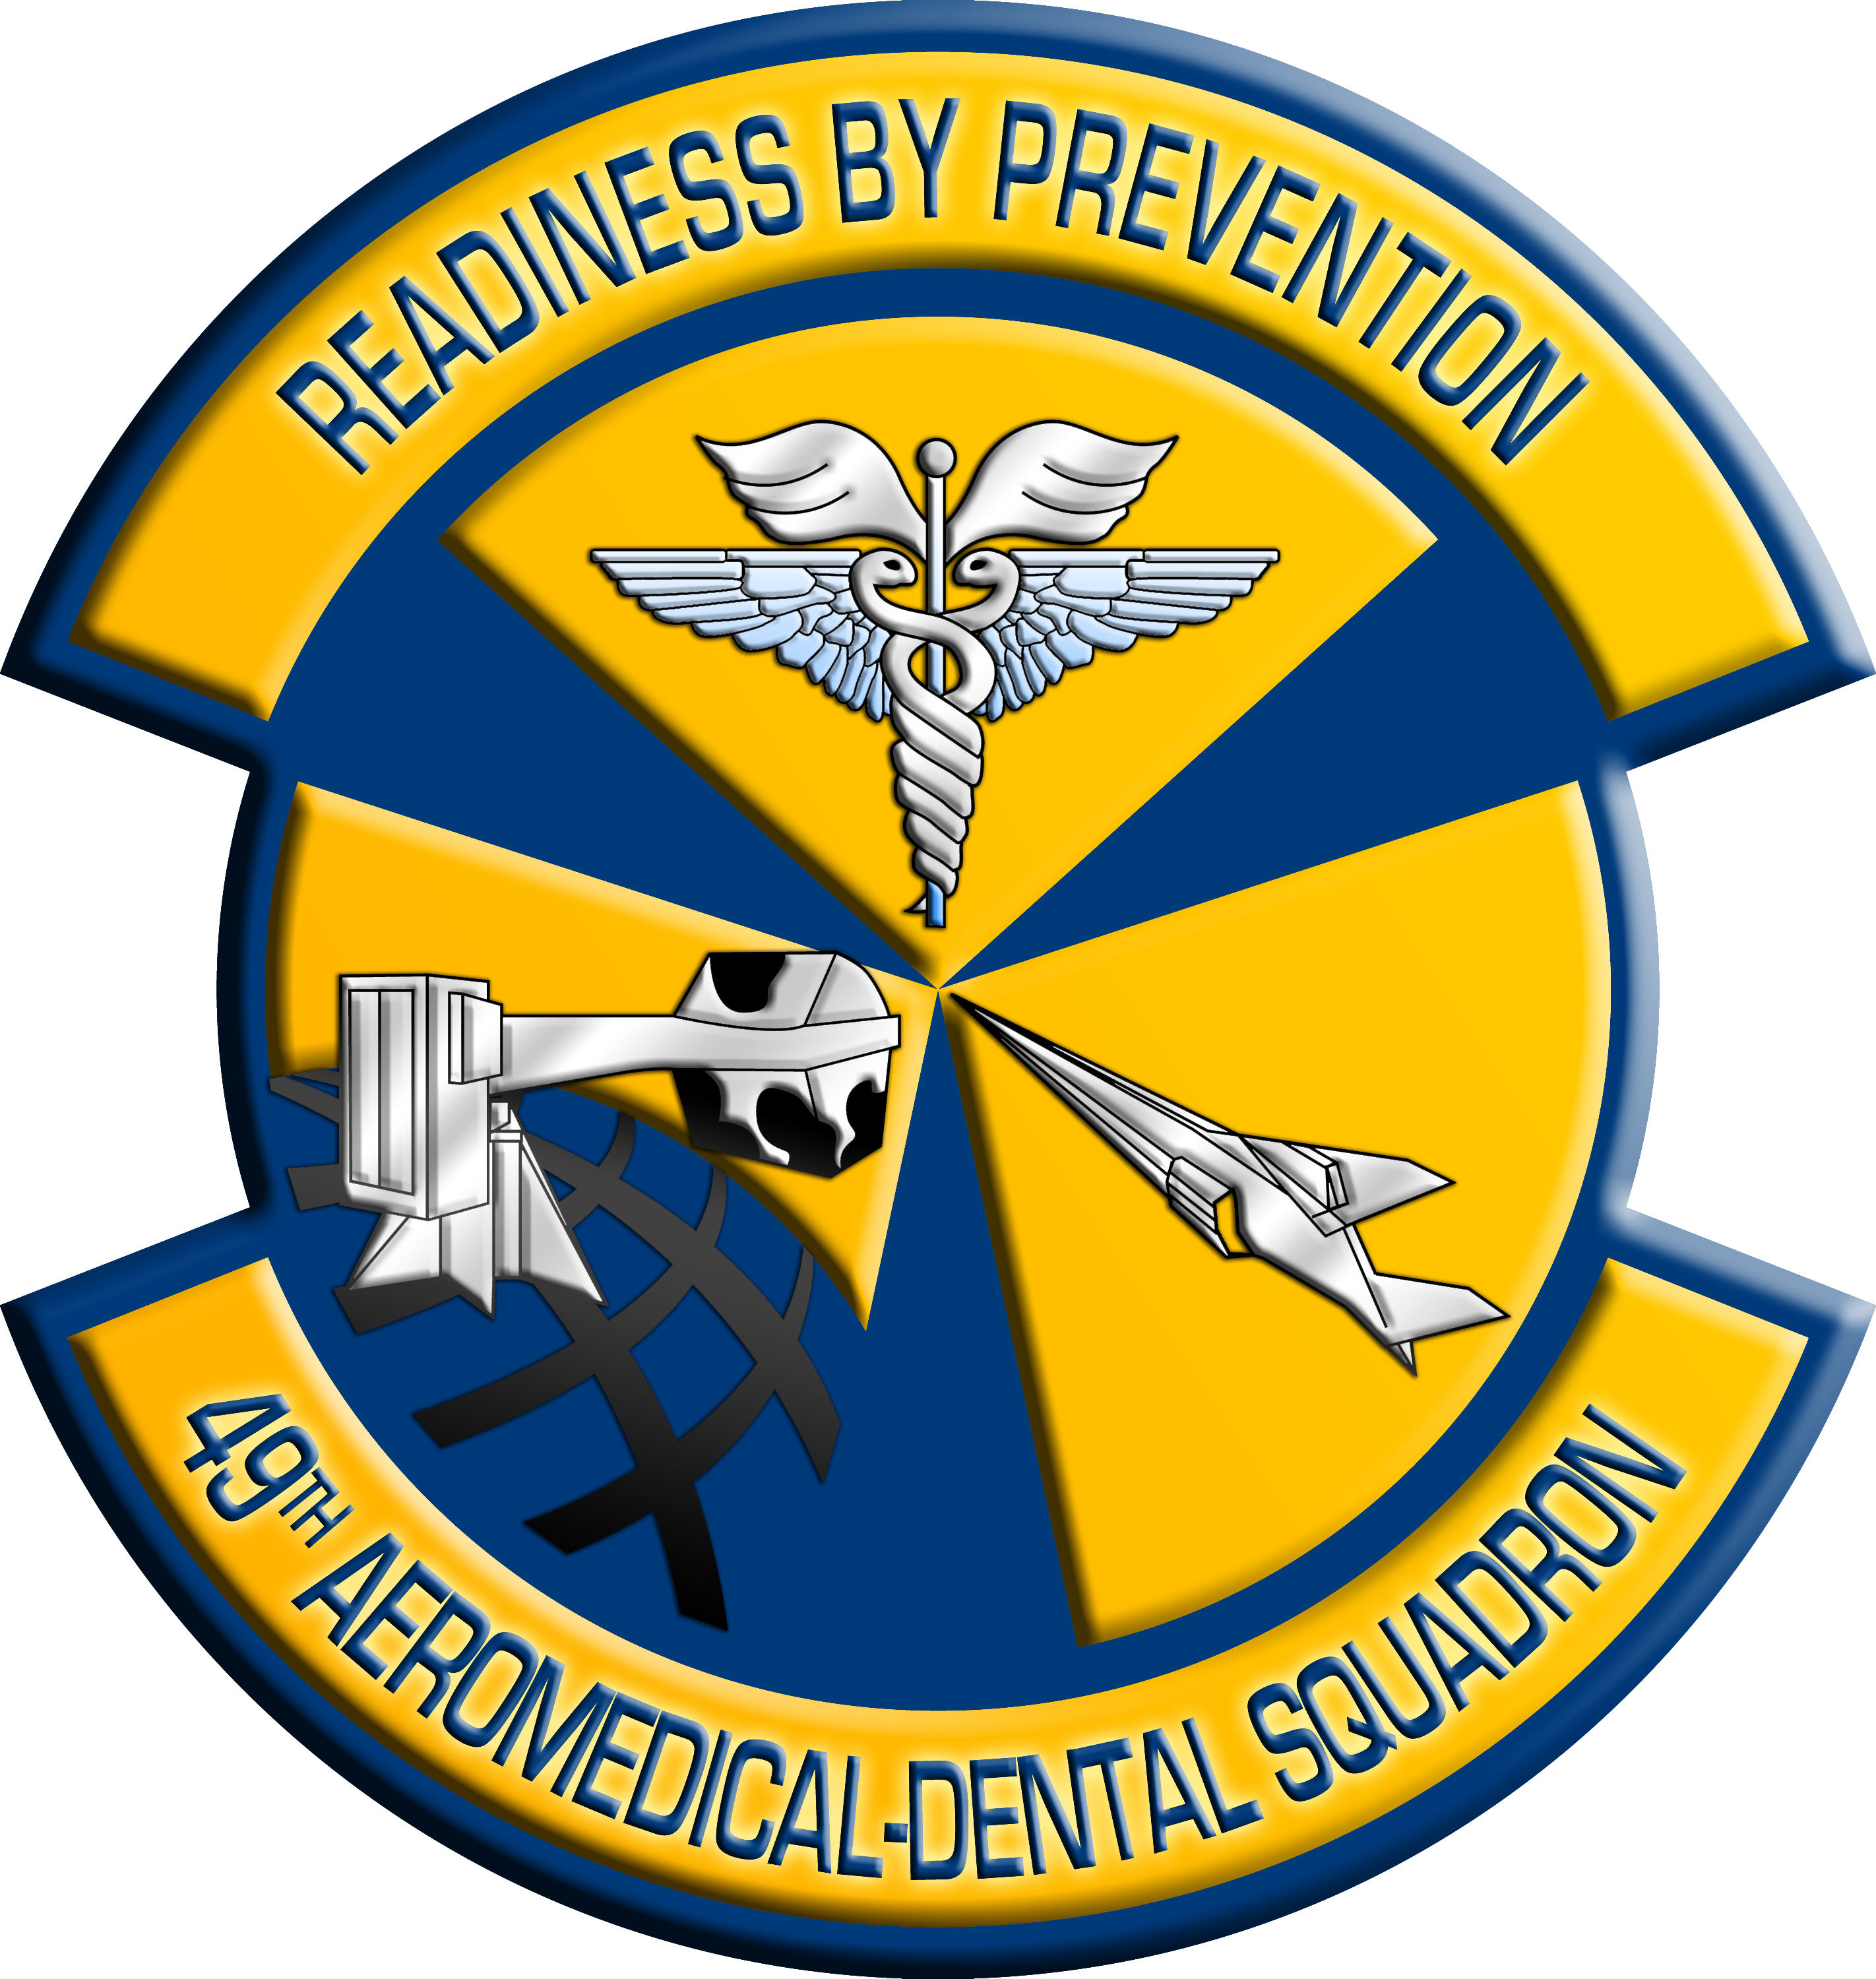 美国空军各部队标志图片